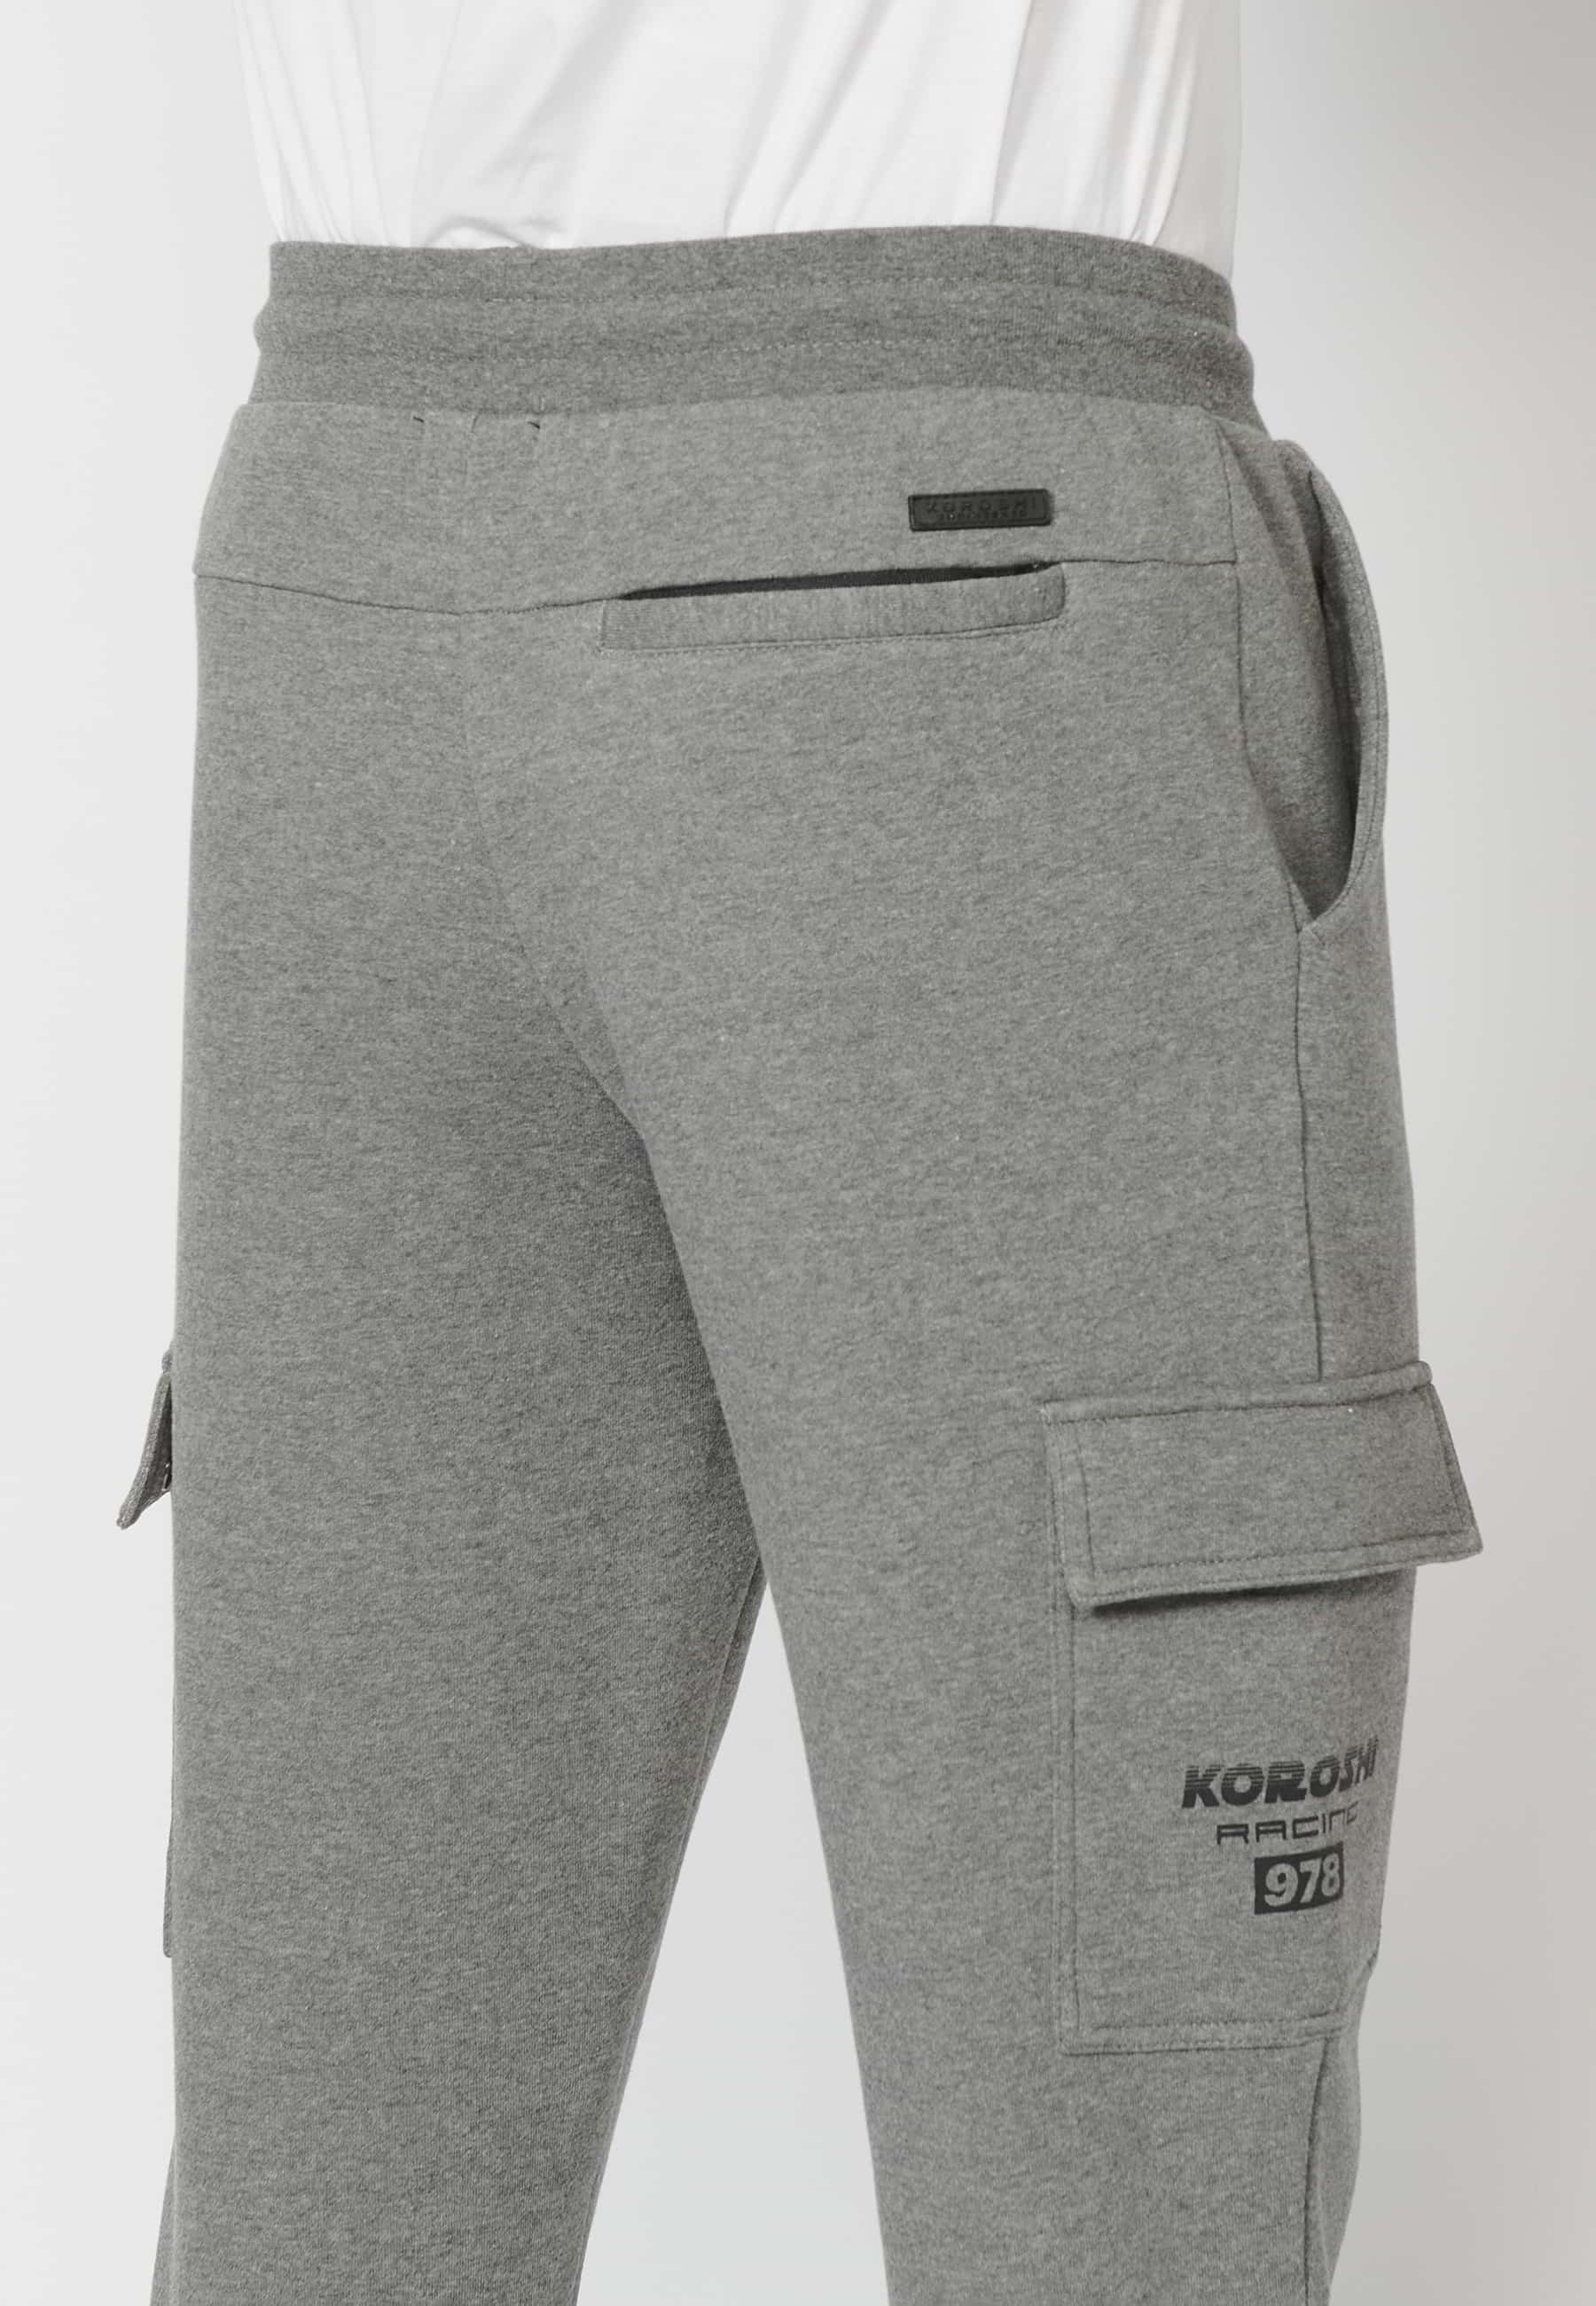 Pantalons llargs jogger amb cintura elàstica ajustable, butxaca càrrec, color Gris per a Home